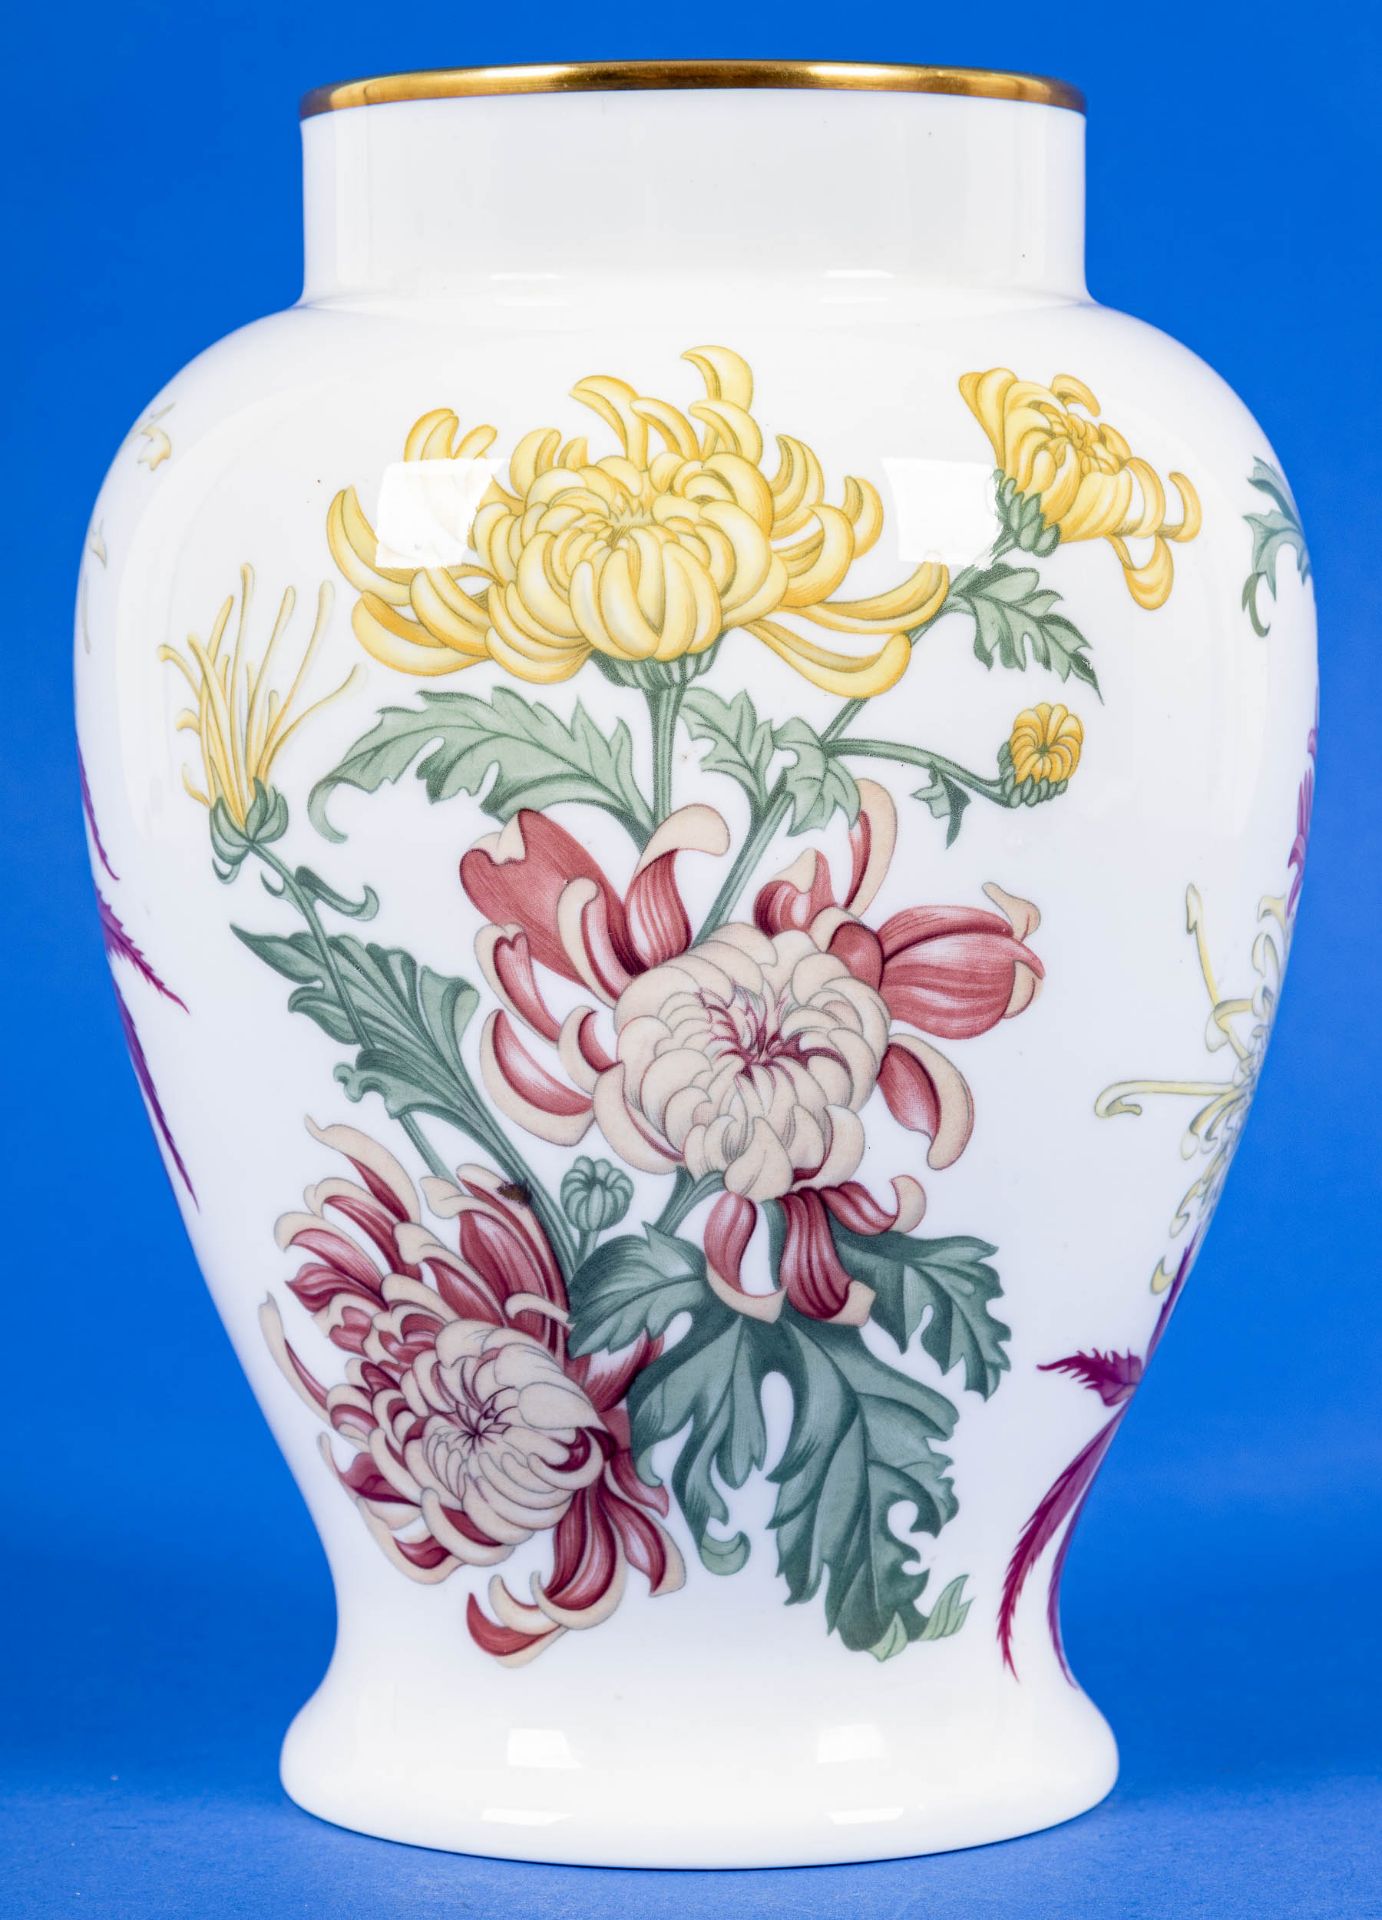 Gebauchte Blumenvase, Wedgewood, Bone-China, Höhe ca. 21 cm, polychrom lithografierte Floraldekore, - Image 3 of 5